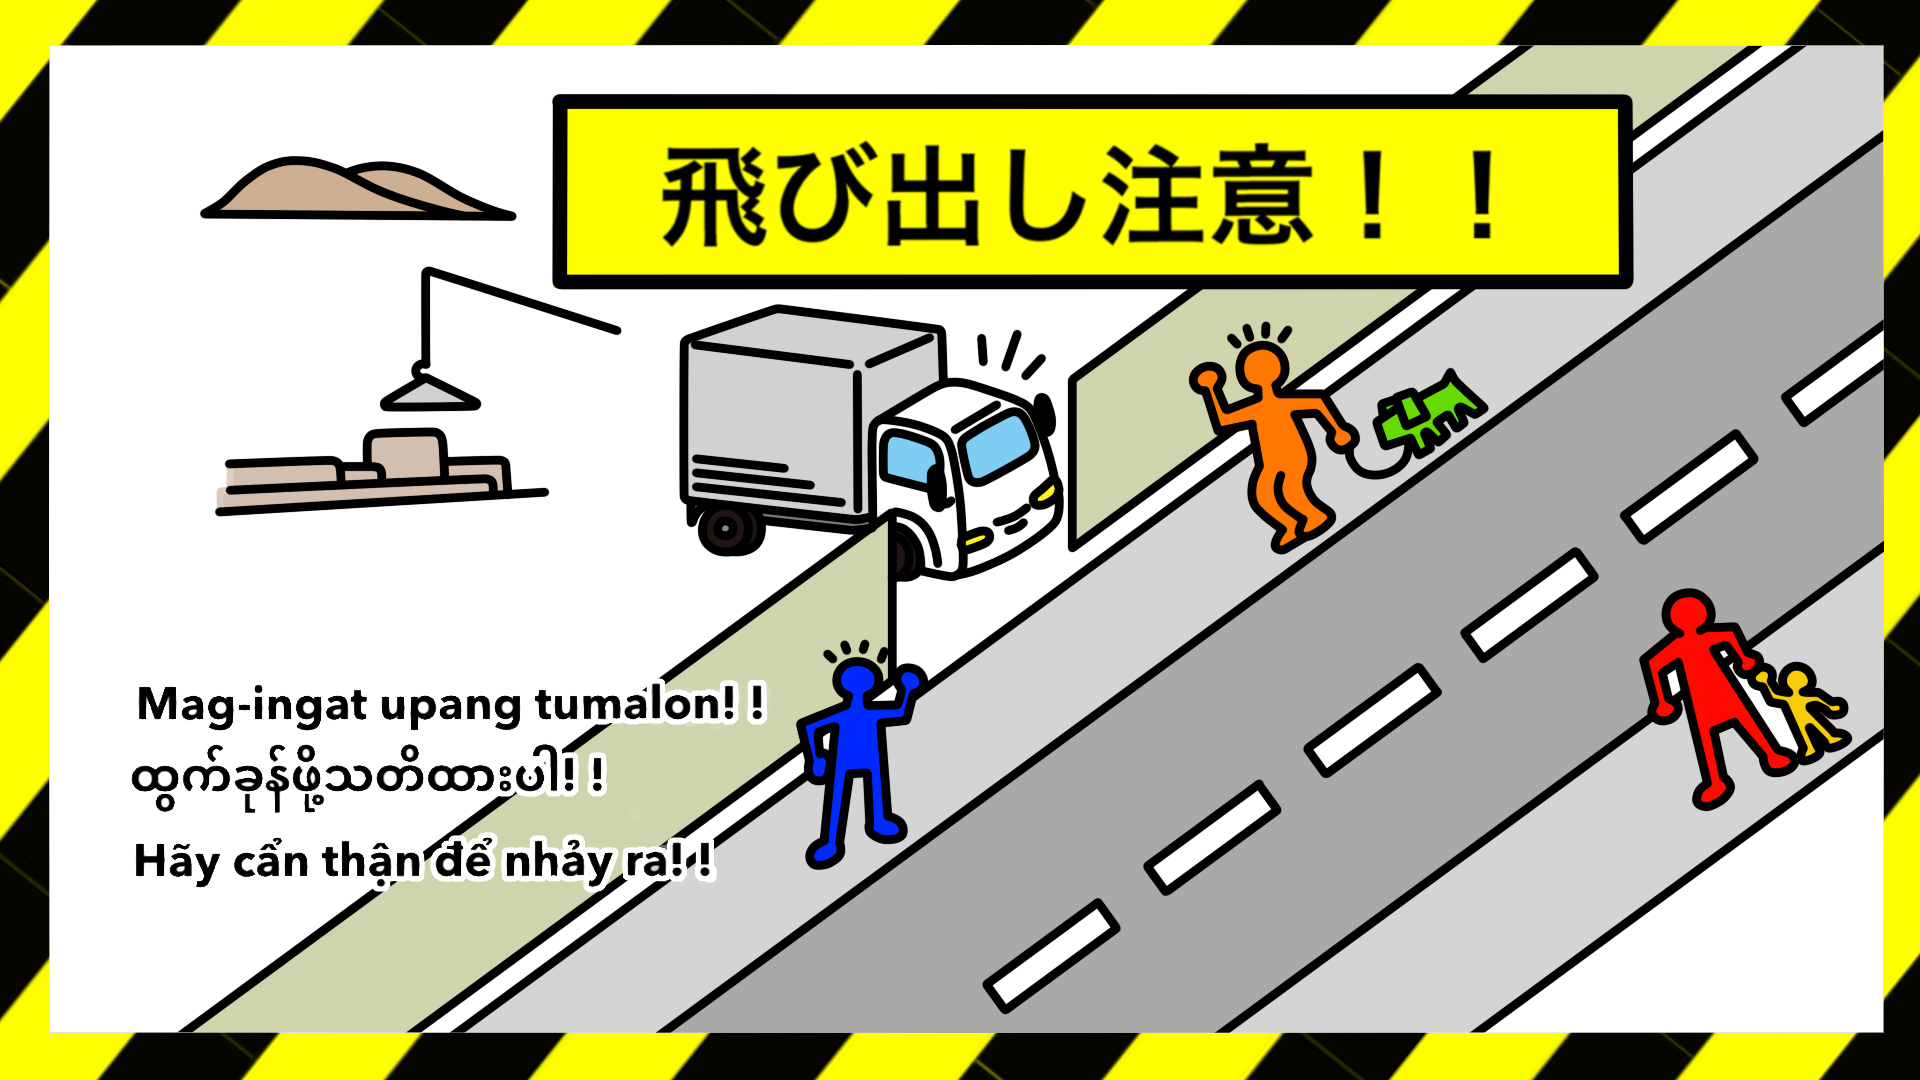 安全標識 無料ポスター 昇降階段 日本語 建設現場 工事現場のポスター イラスト 無料 フリー ダウンロードサイト